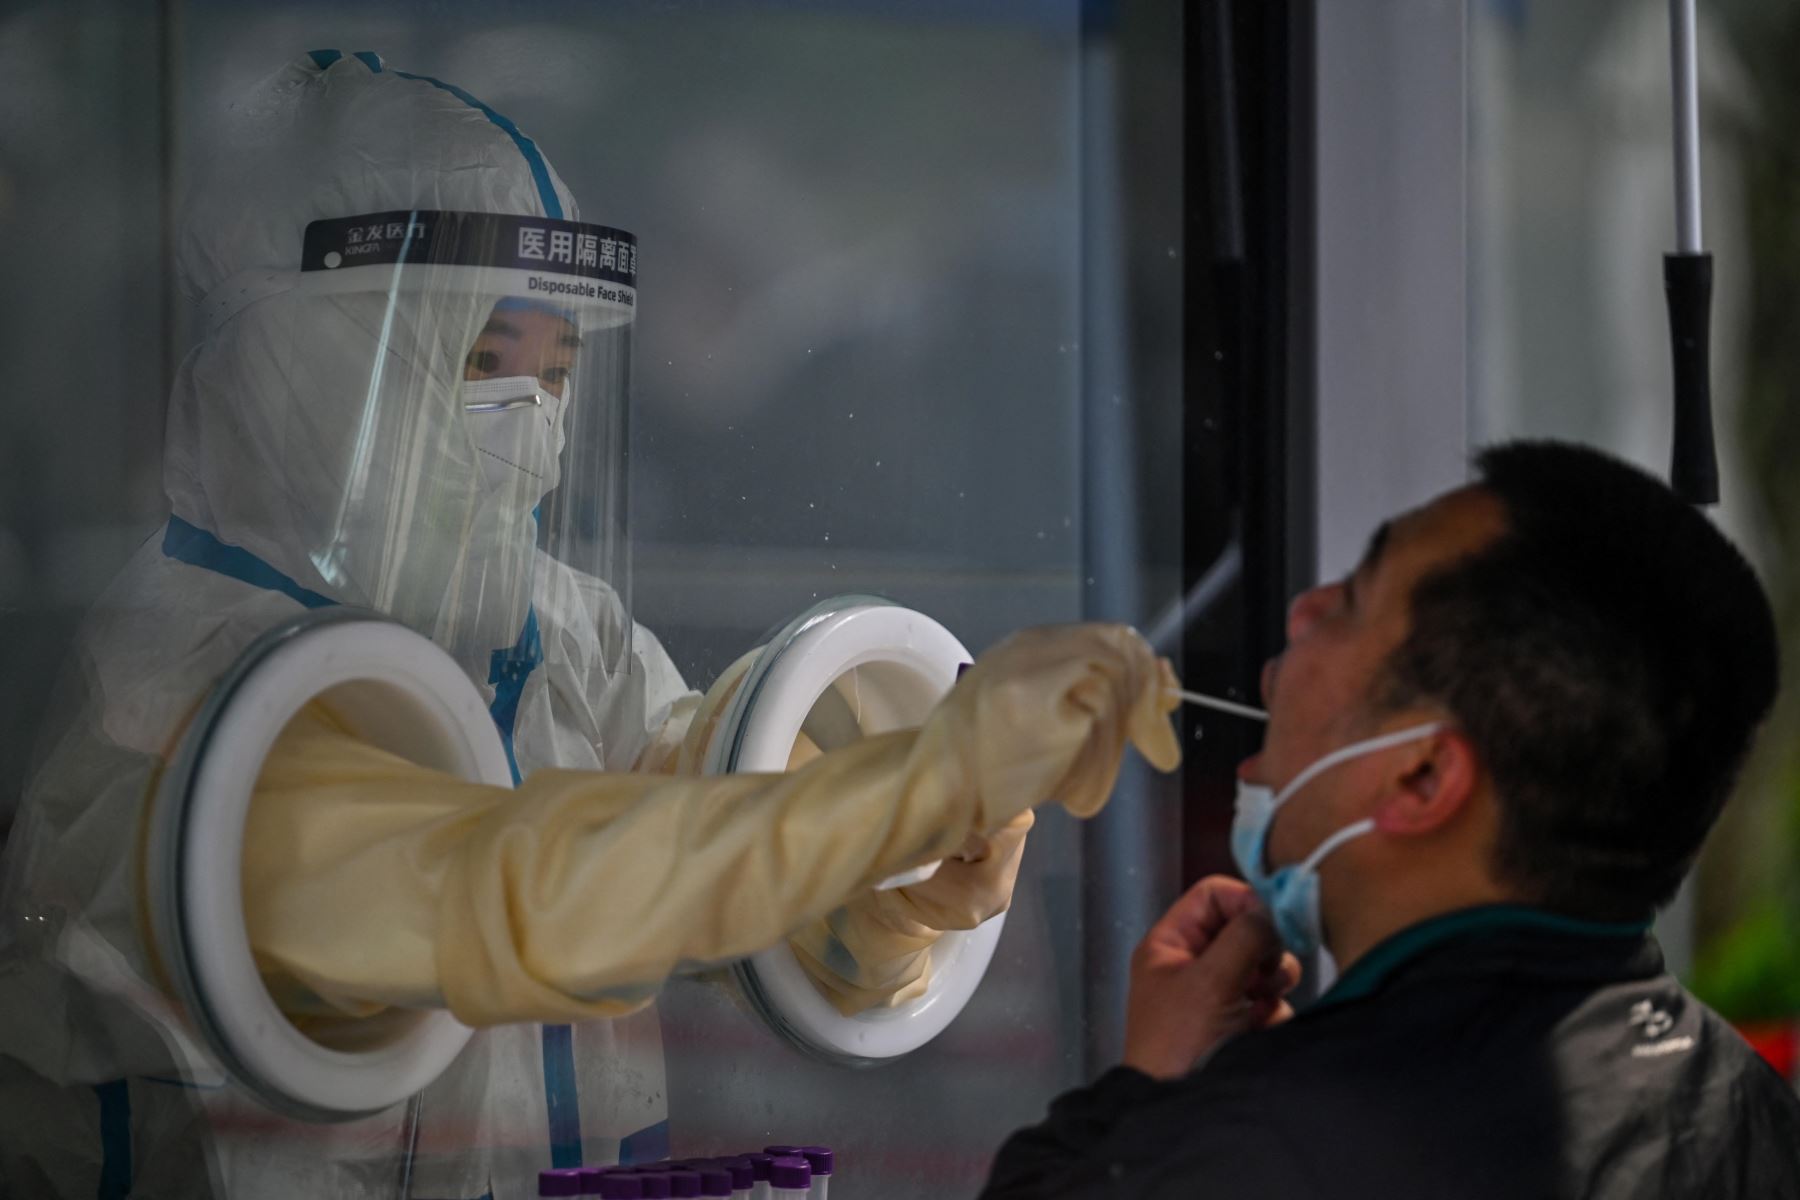 Un trabajador de la salud toma una muestra de hisopo de un hombre durante un encierro por coronavirus Covid-19 en el distrito de Jing